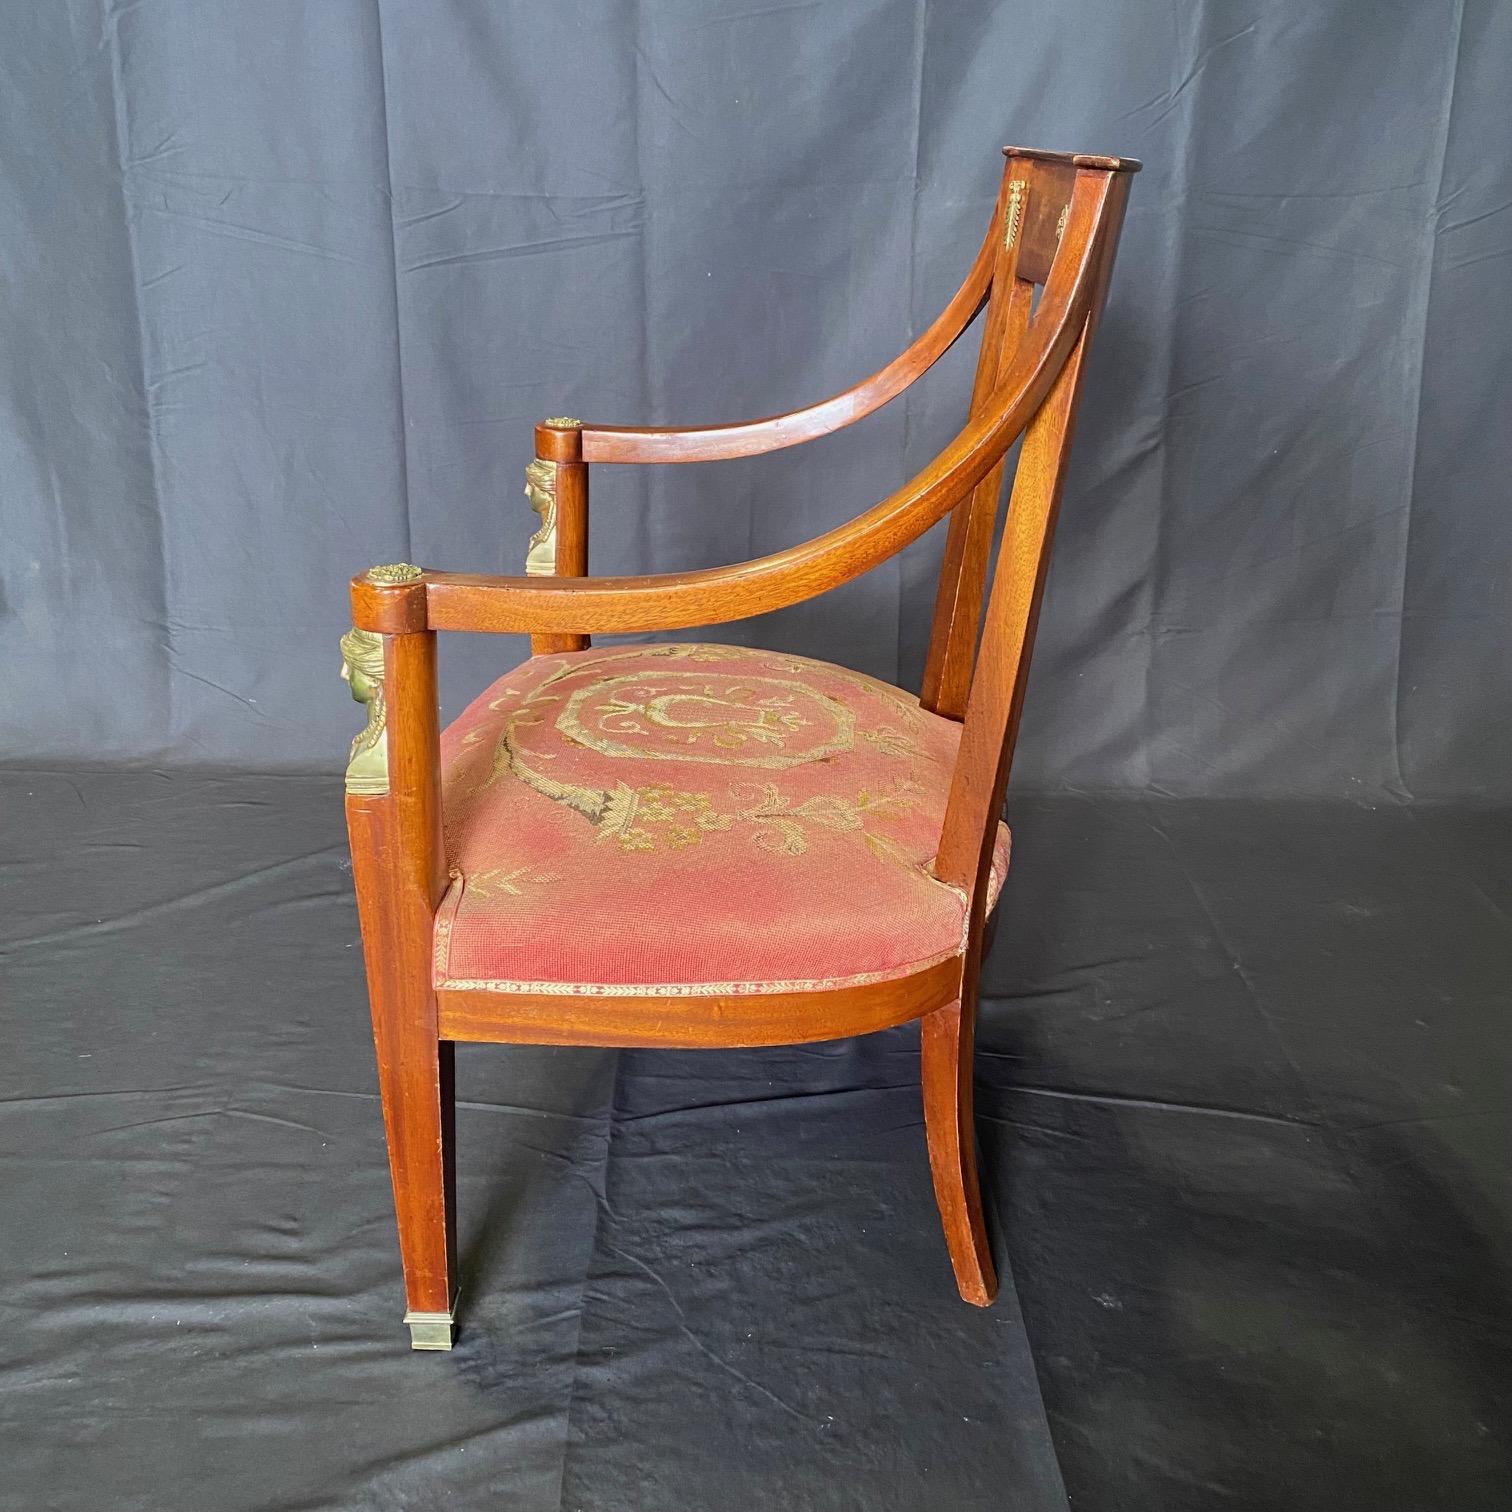 Diese in Frankreich gekauften neoklassizistischen Sessel oder Fauteuils aus französischem Mahagoni mit Intarsien sind unglaubliche Kunstwerke mit originalen Sitzen aus Petit-Point-Gobelin, außergewöhnlichen Bronzefiguren an den Armlehnen und